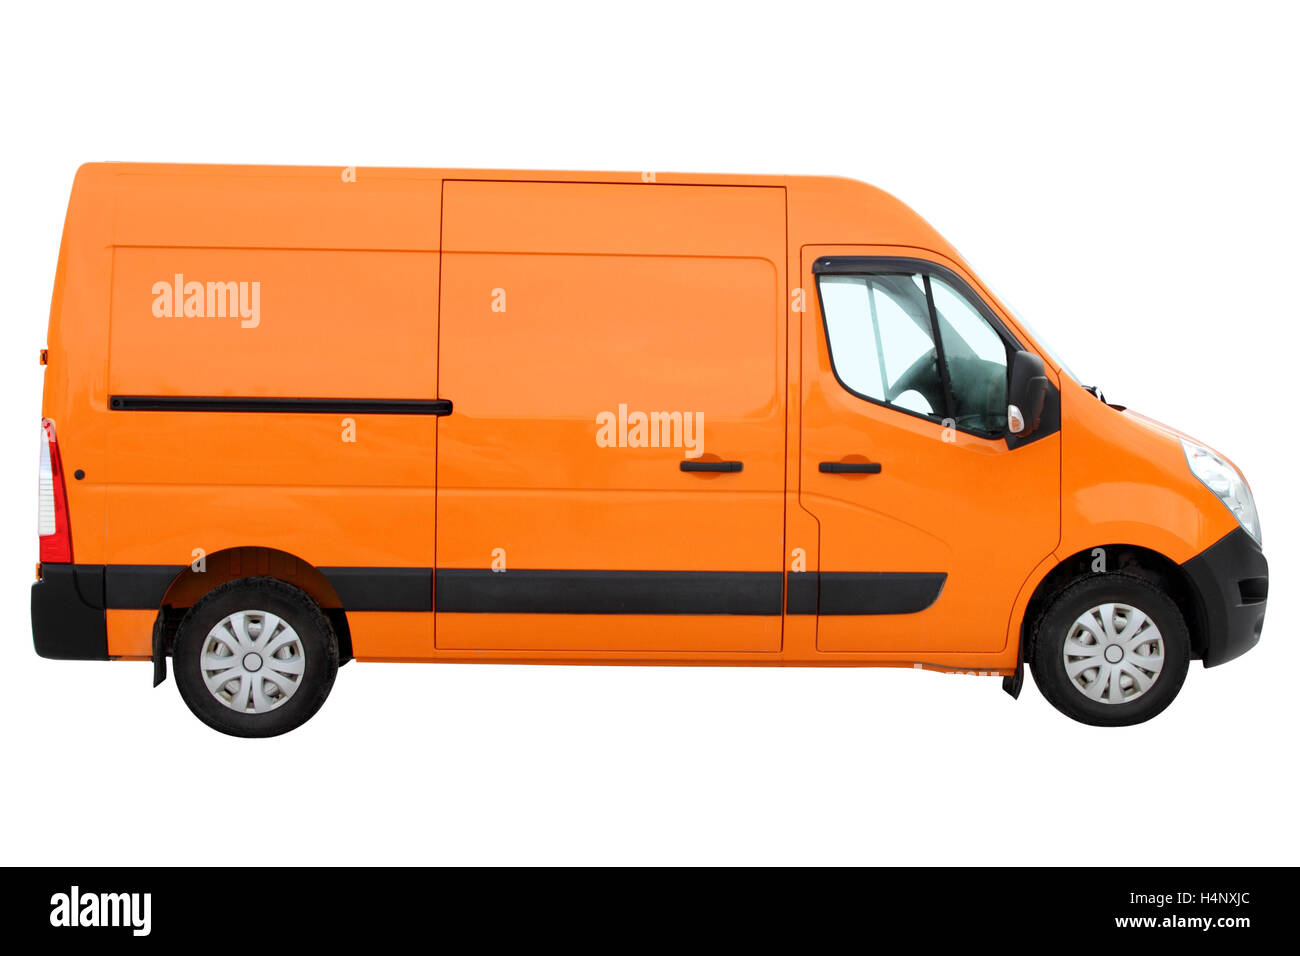 Moderne kompakt-van für den Transport von Gütern. Stockfoto